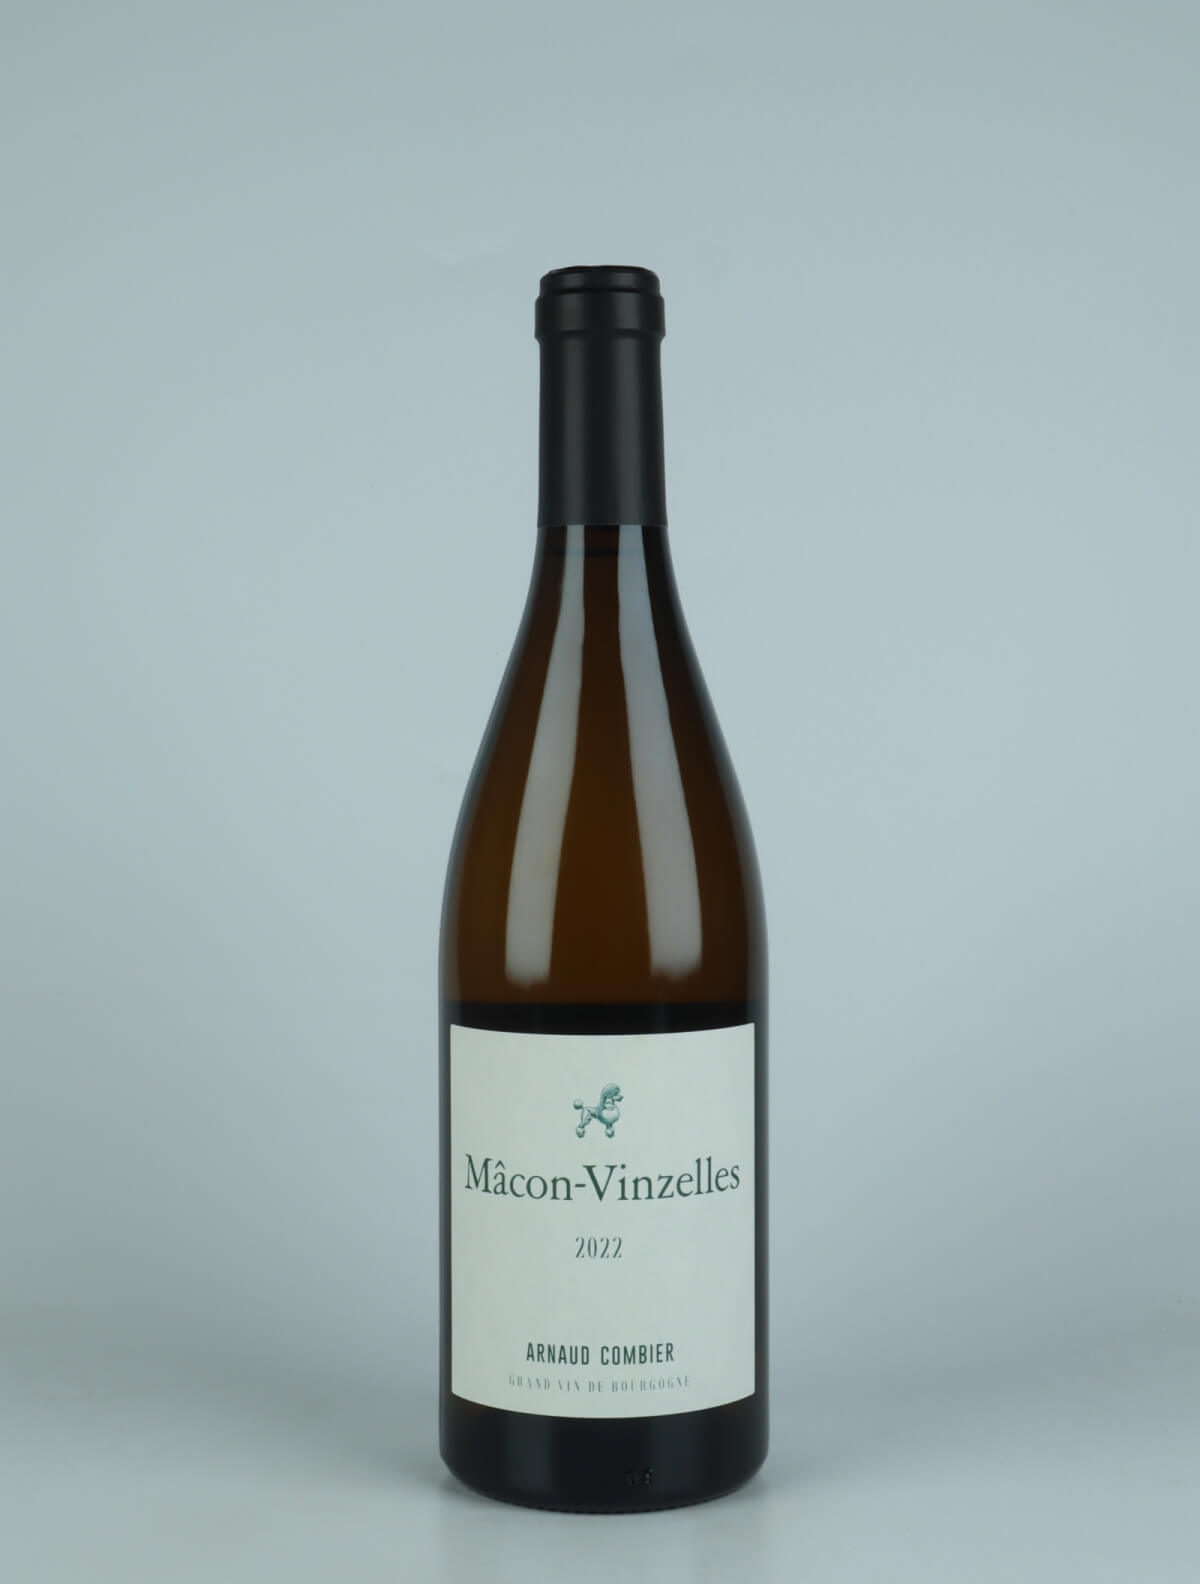 En flaske 2022 Mâcon Vinzelles Hvidvin fra Arnaud Combier, Bourgogne i Frankrig